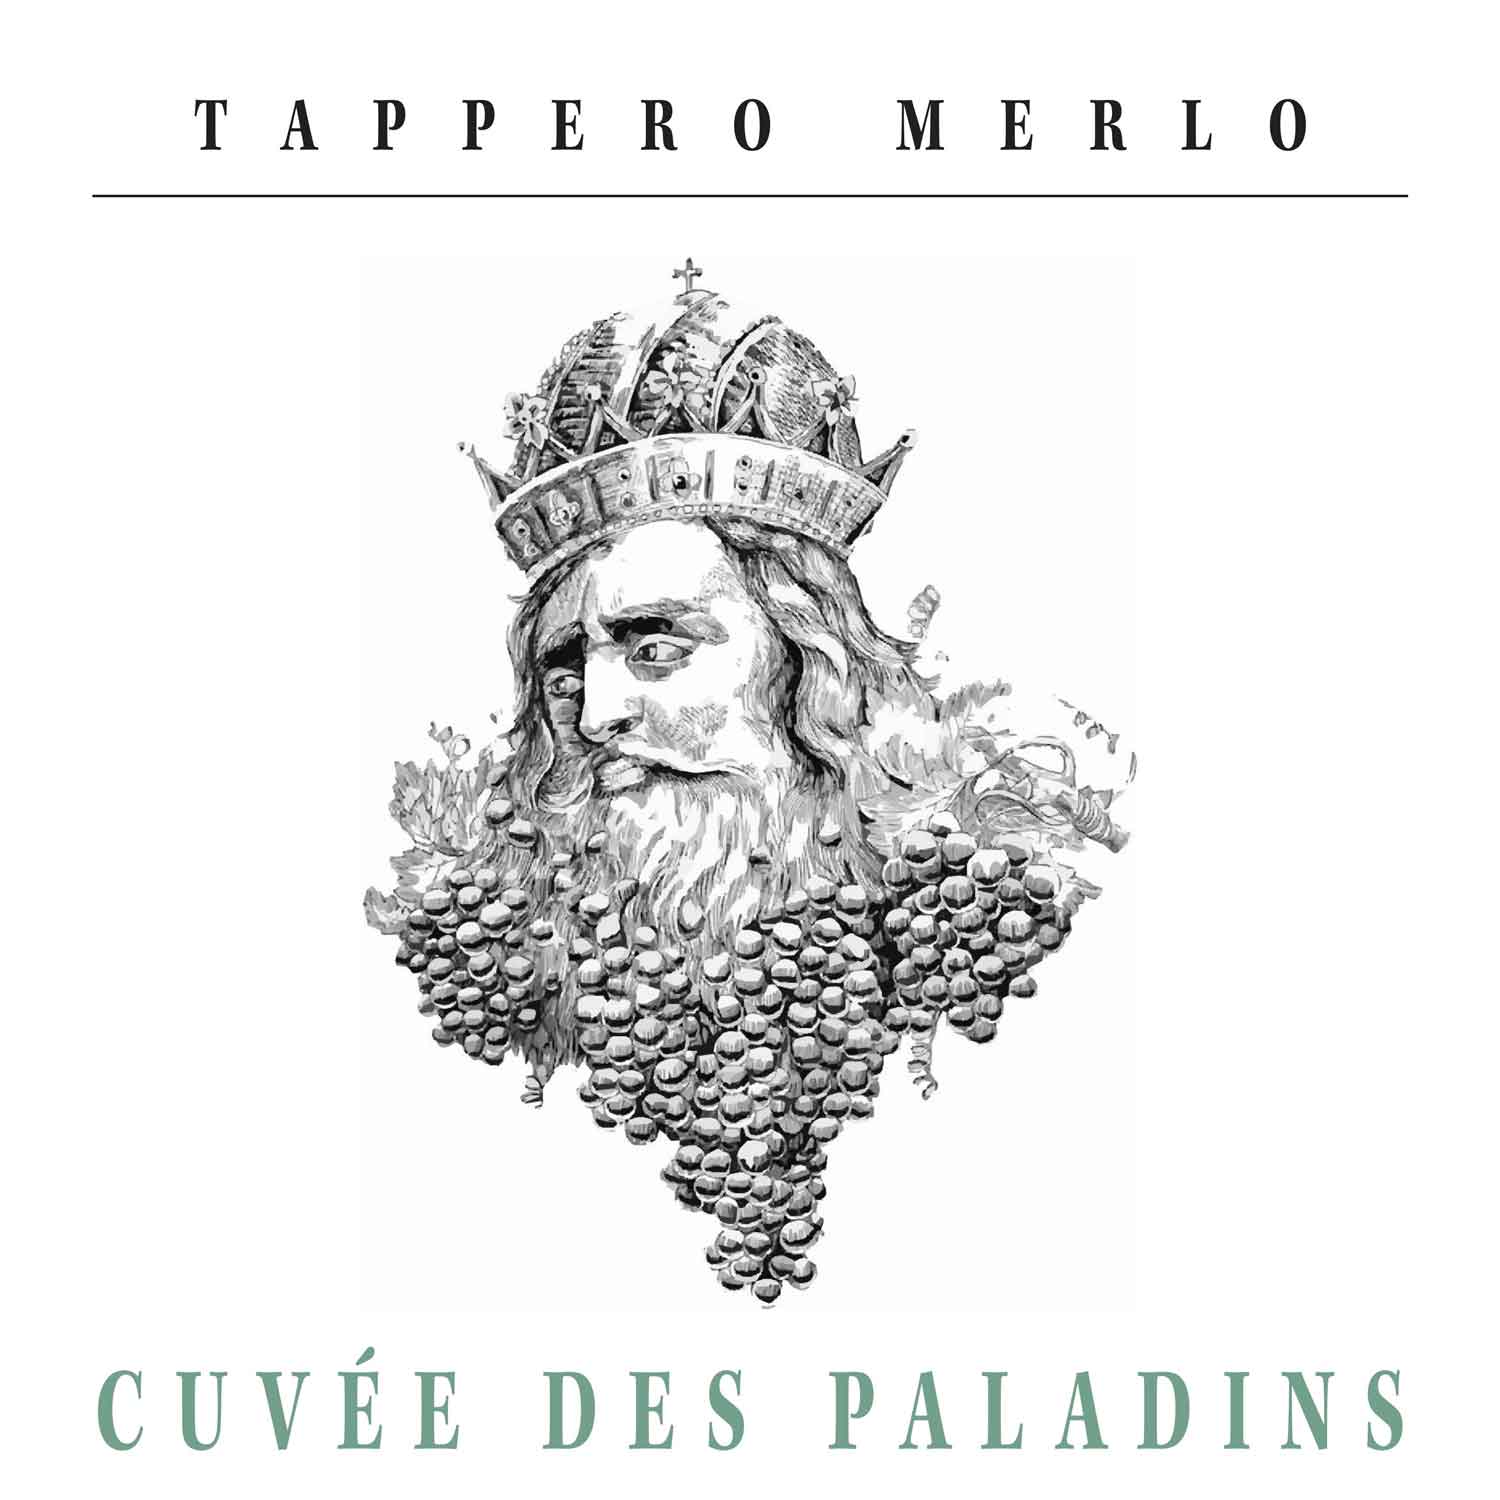 etichetta-bottiglia-vino-cuvée-des-paladins-tappero-merlo